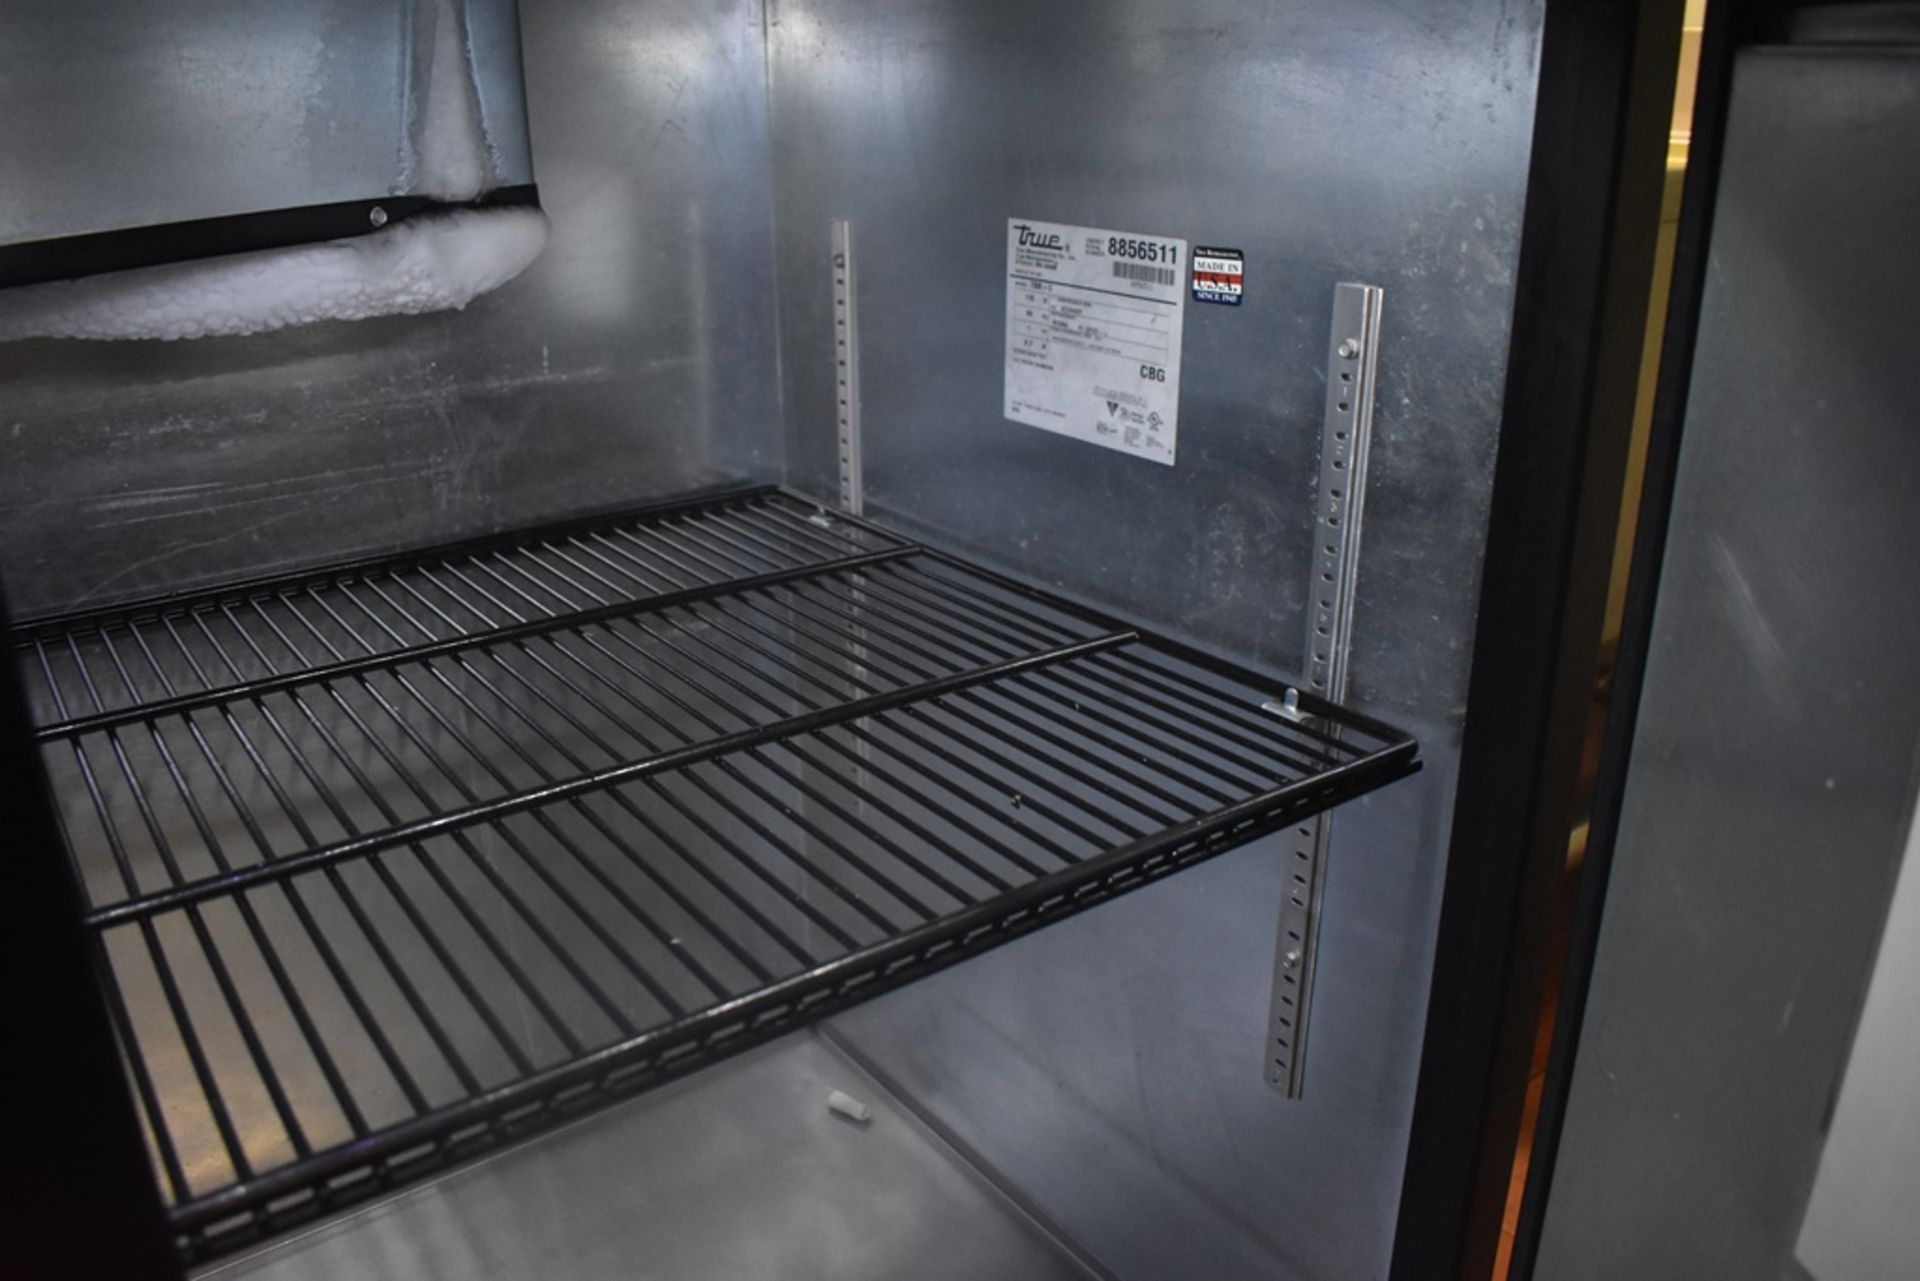 Mesa de trabajo refrigerada con cubierta en acero inoxidable marca True, modelo TBB-3, número de se - Image 16 of 20